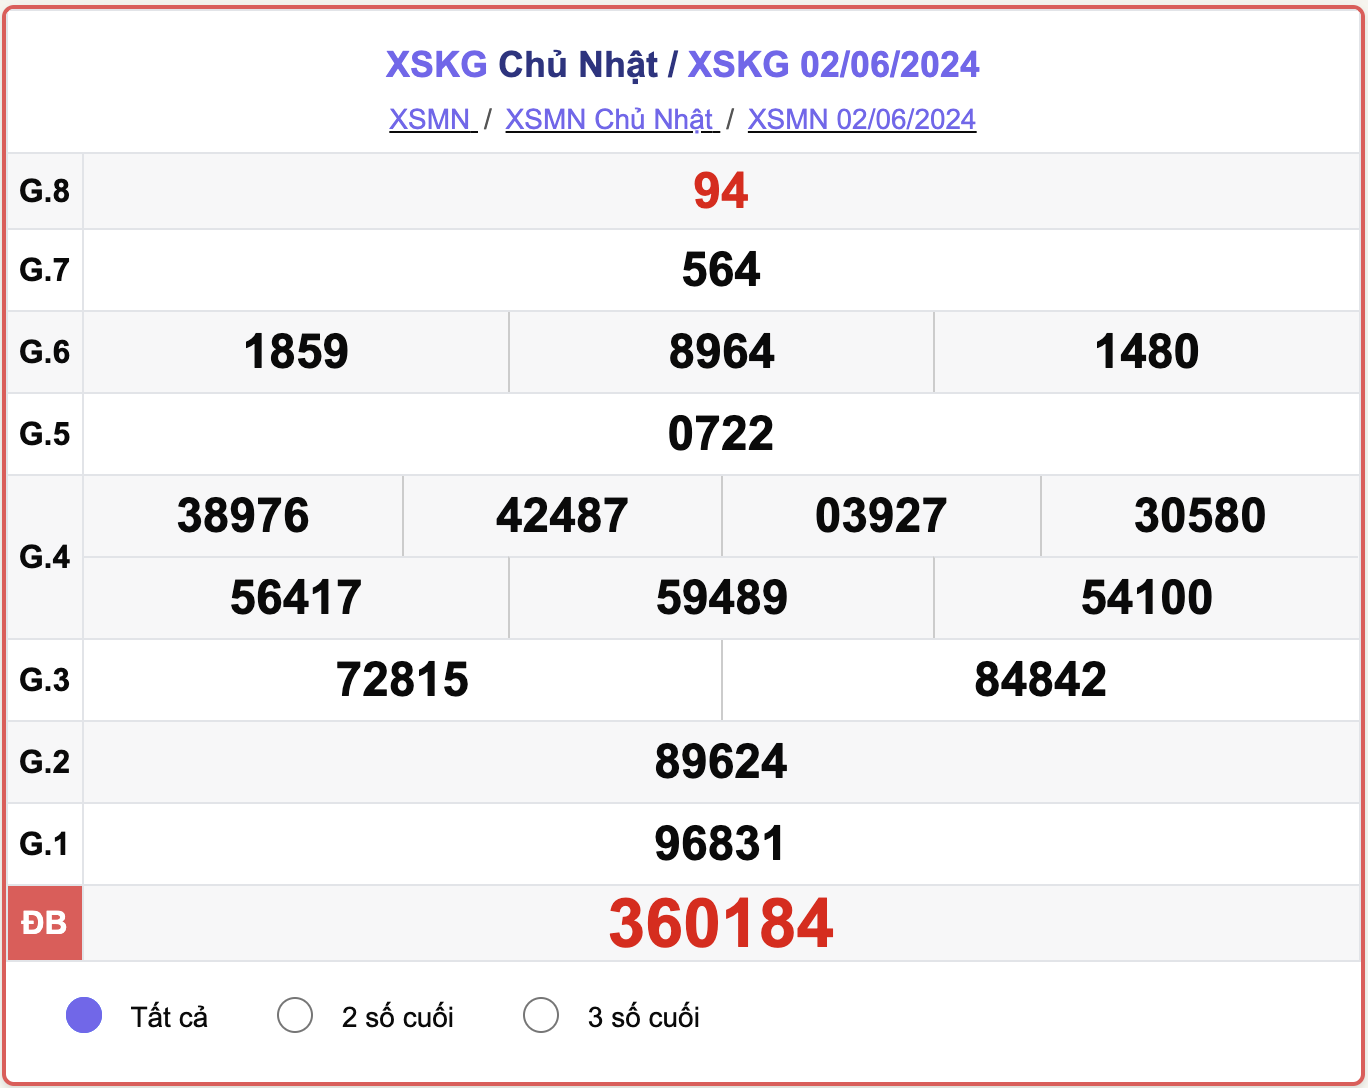 XSKG 2/6, kết quả xổ số Kiên Giang hôm nay 2/6/2024.